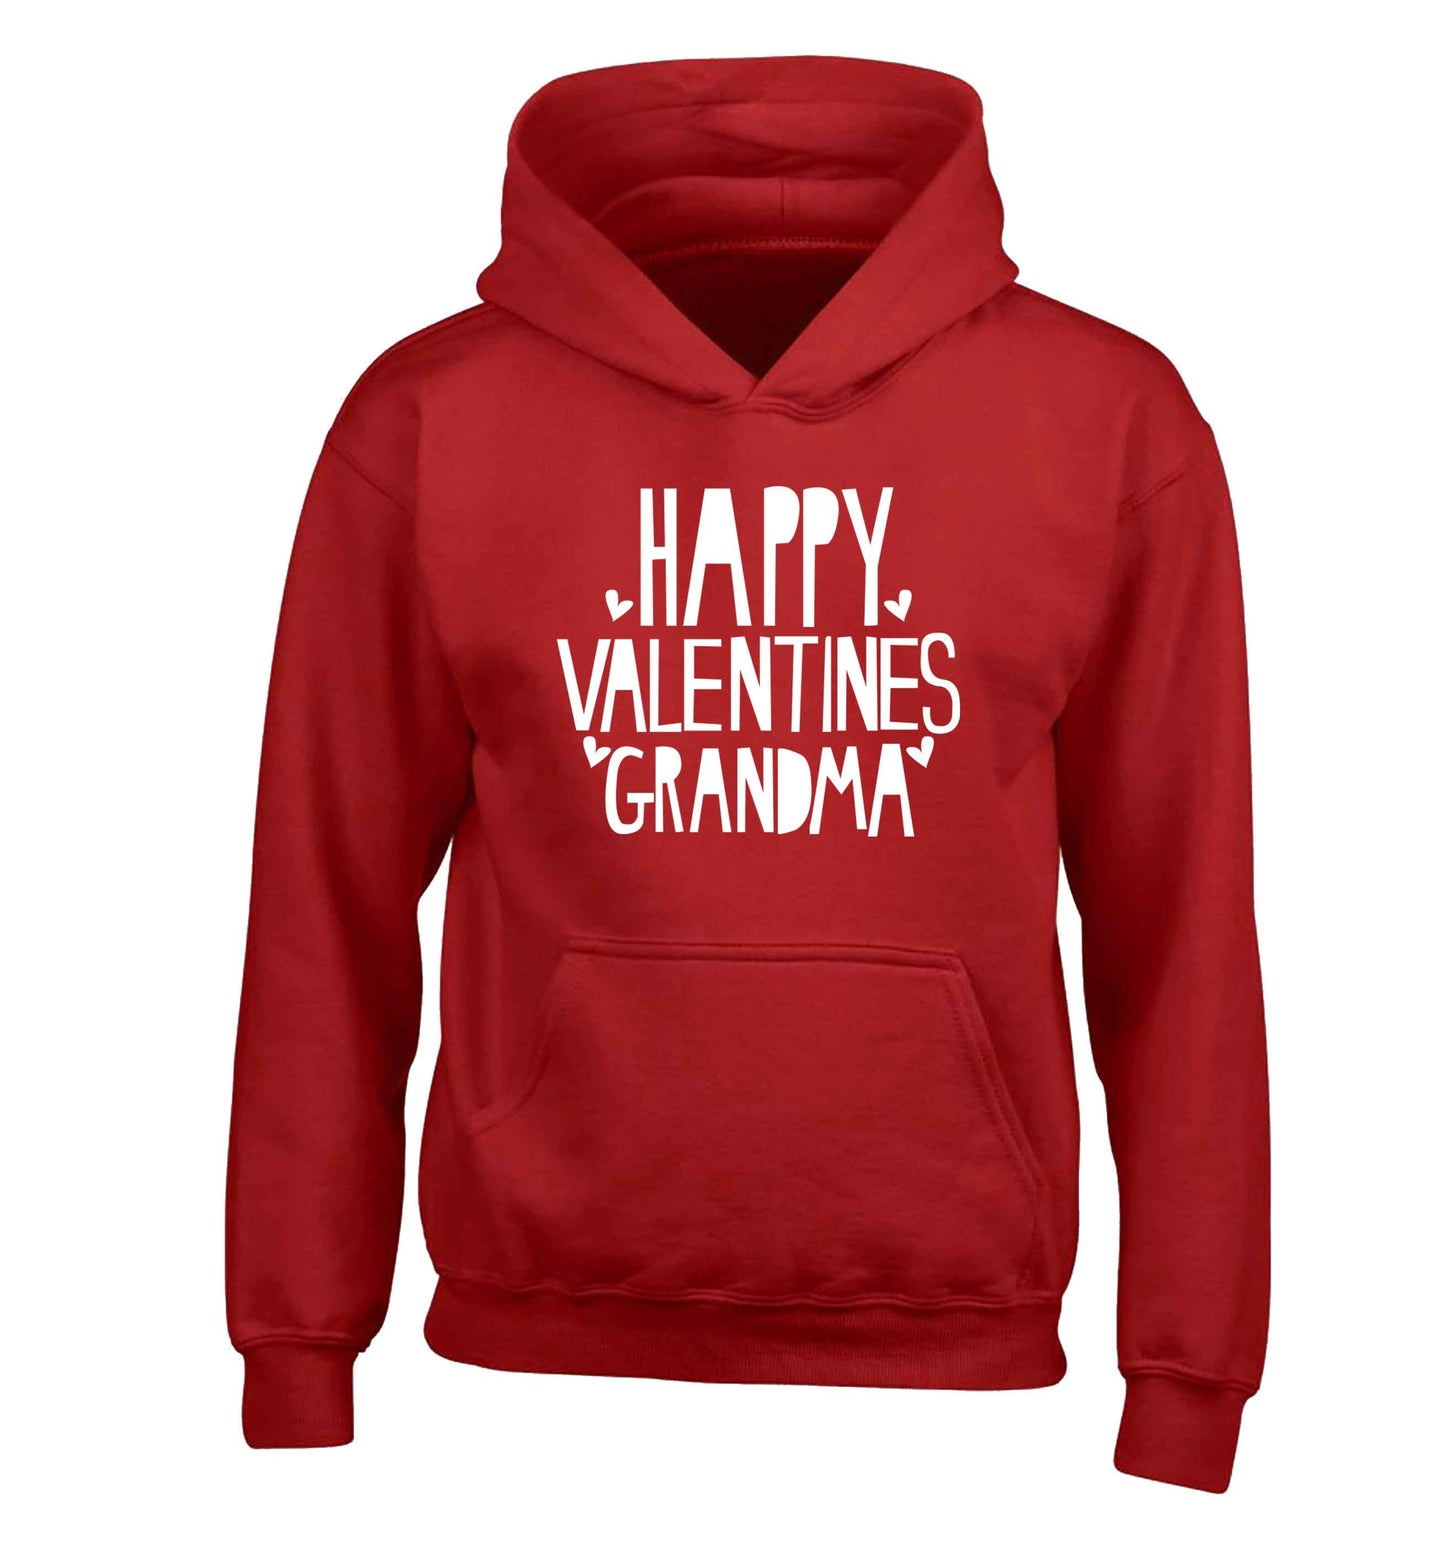 Happy valentines grandma children's red hoodie 12-13 Years